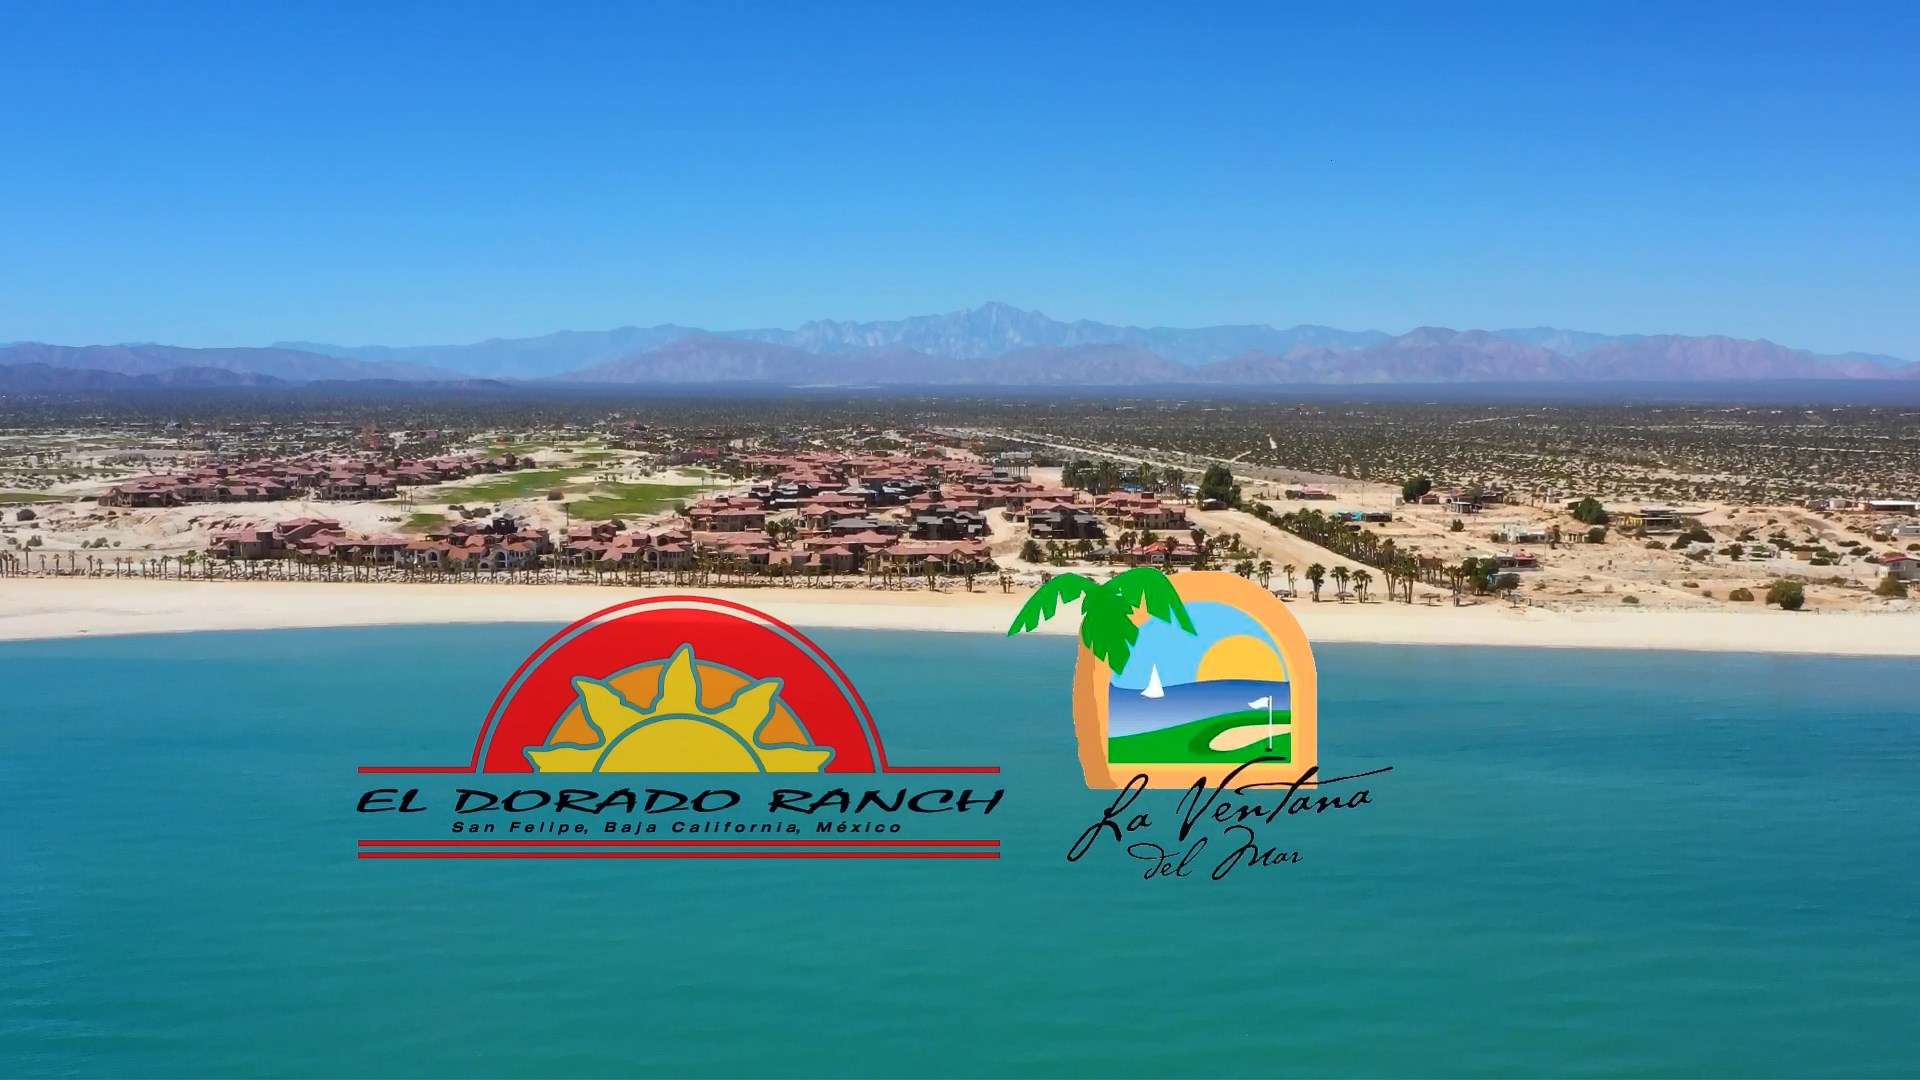 El Dorado Ranch - La Ventana del Mar